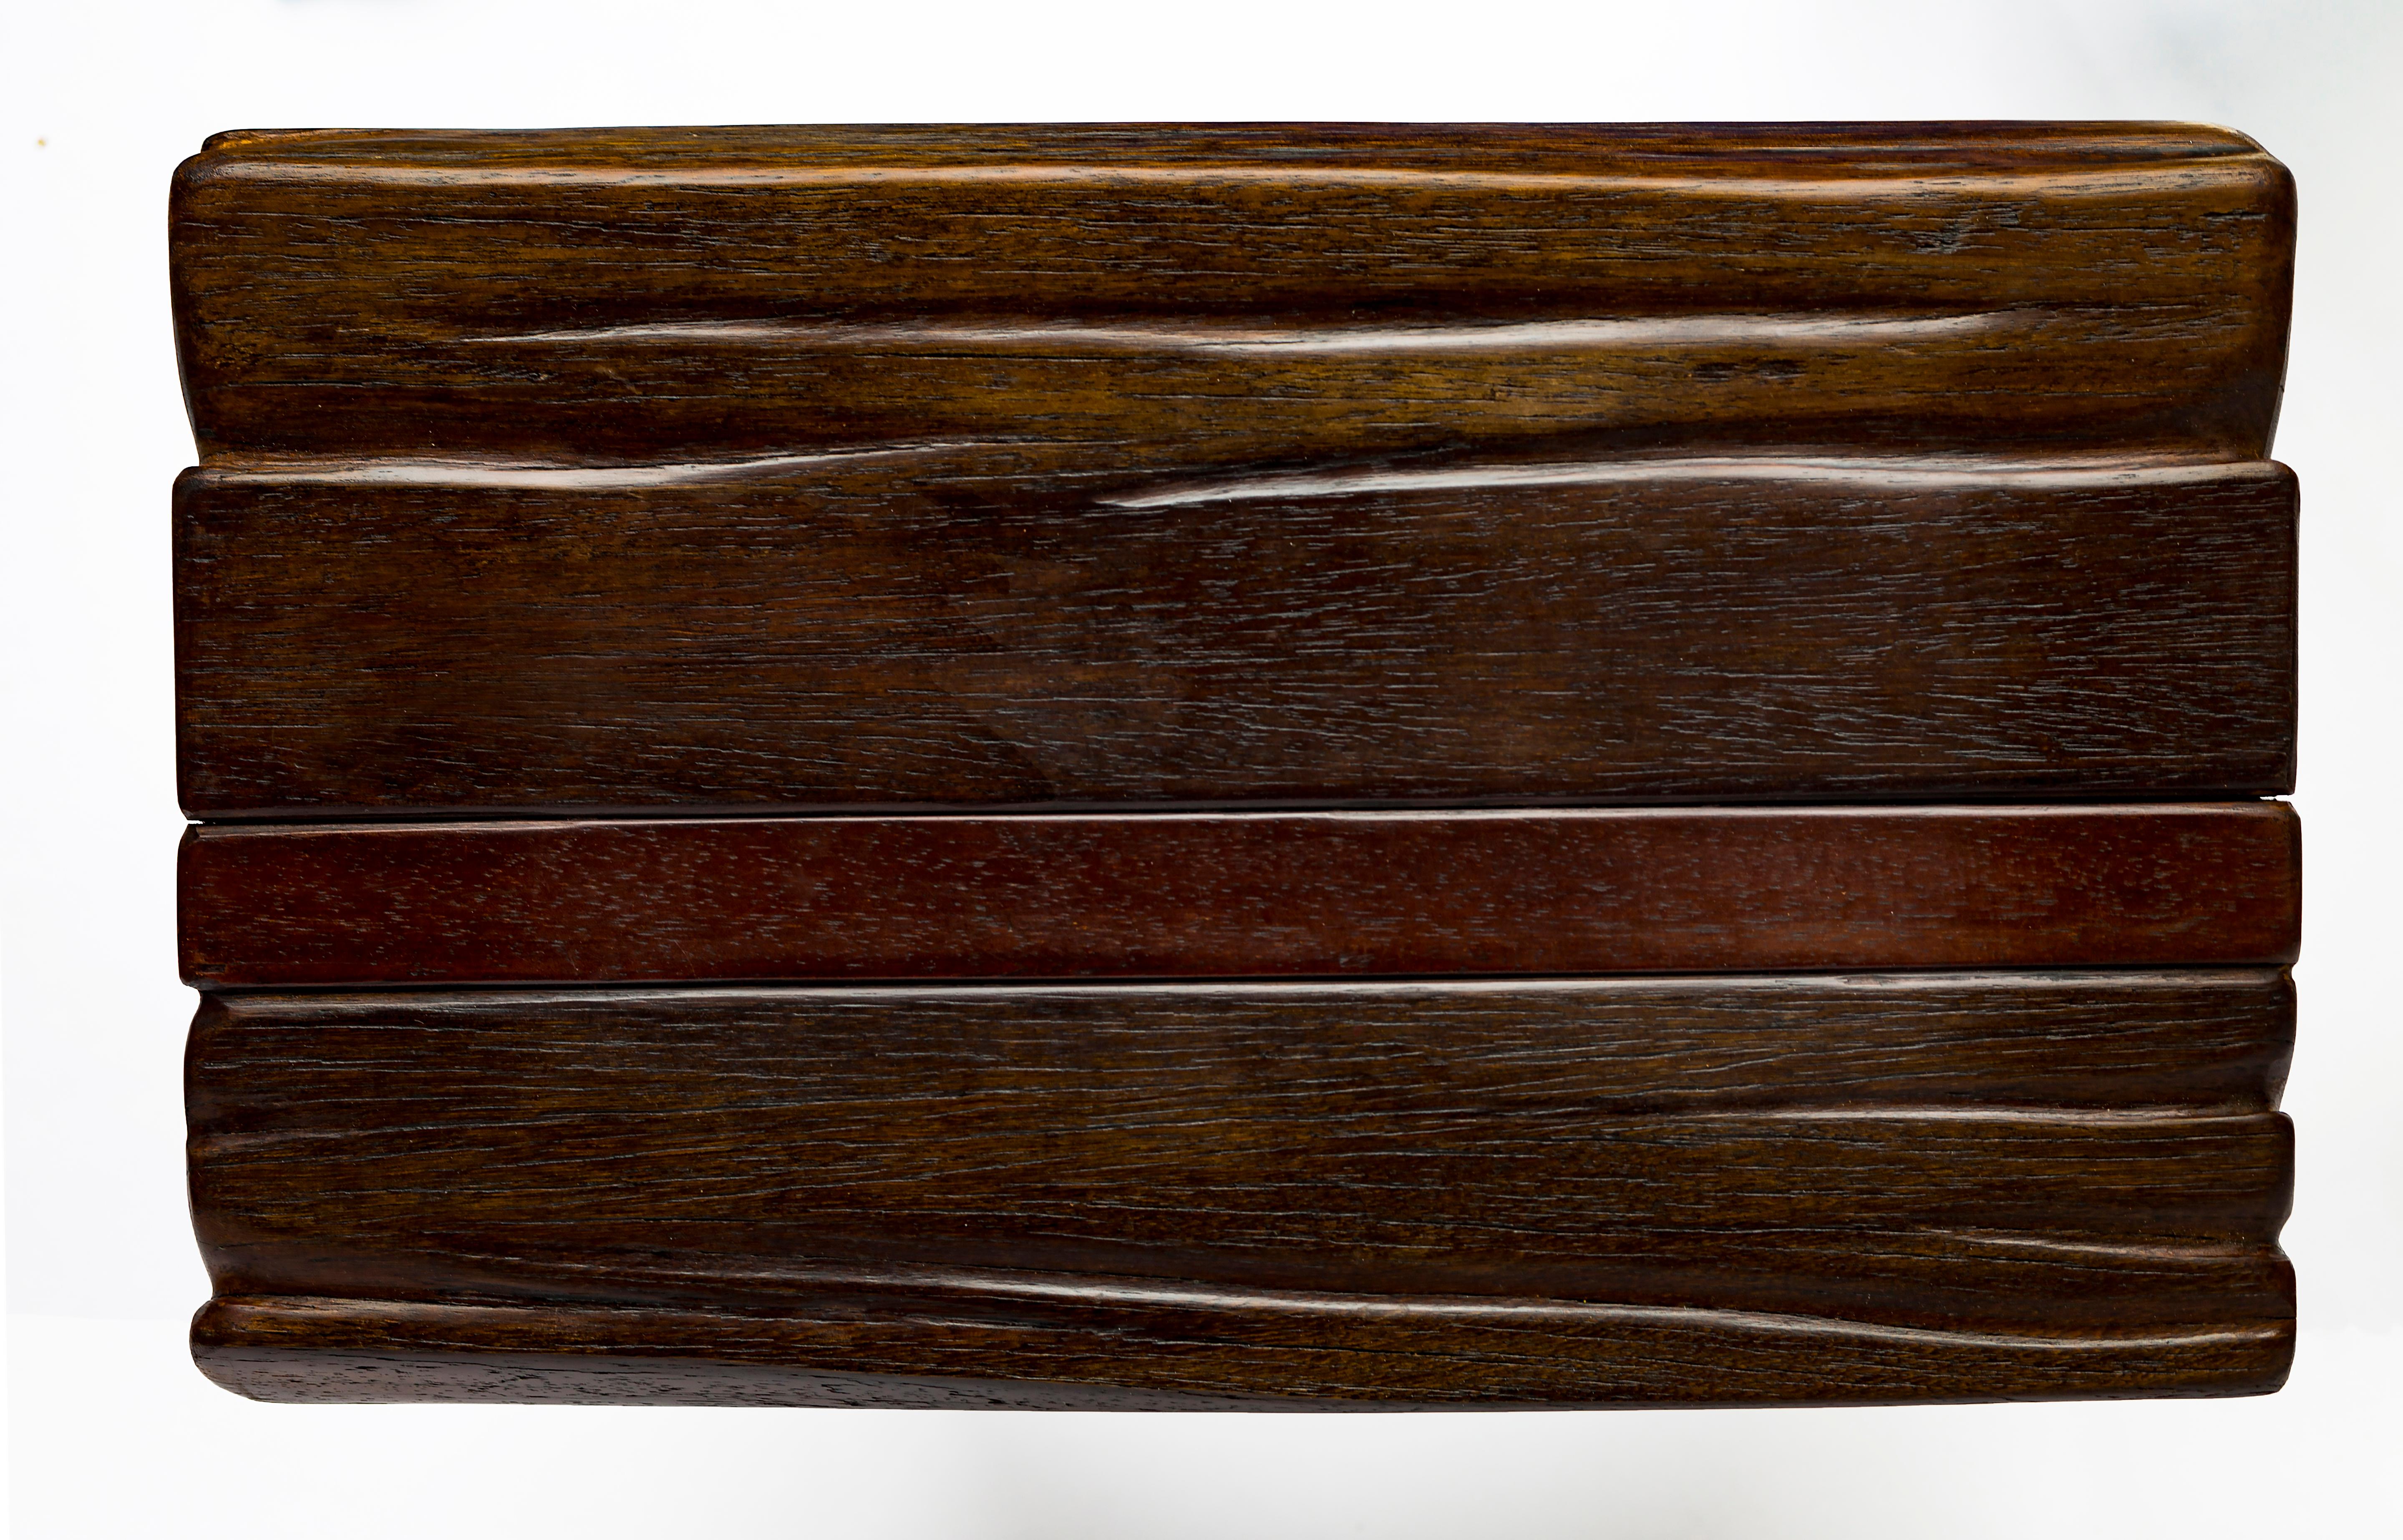 Patinated Jordan Mozer, Sx.Chunk Table, Hand Carved Ironwood, Cast Aluminum, Chicago, 2018